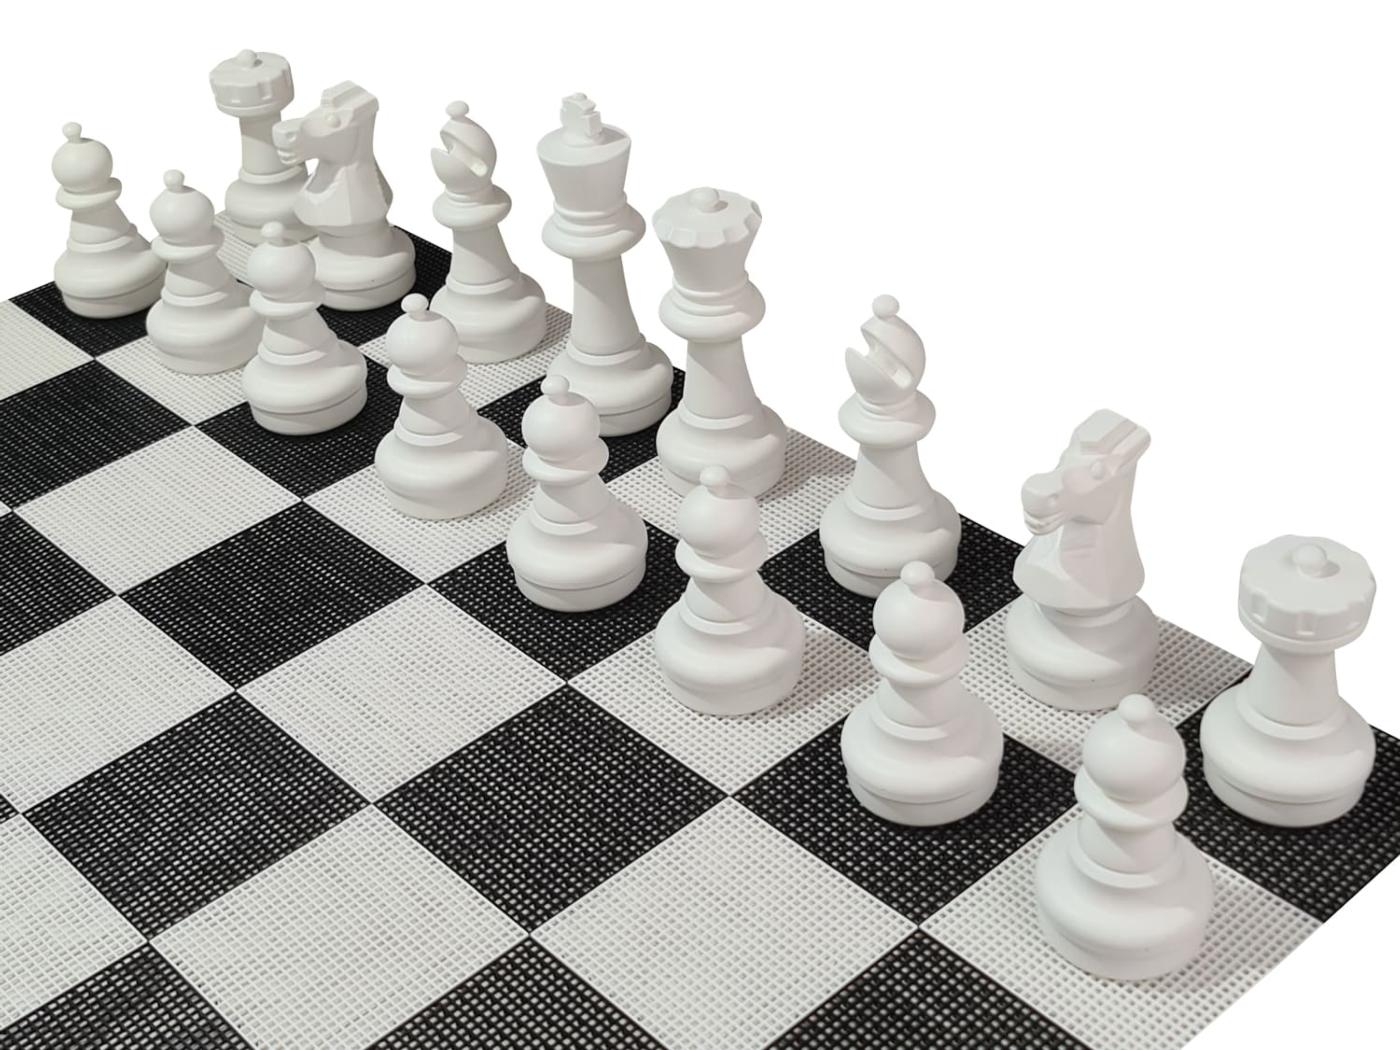 Jogo de xadrez gigante com tabuleiro rígido gigante incluido peças pretas com tabuleiro